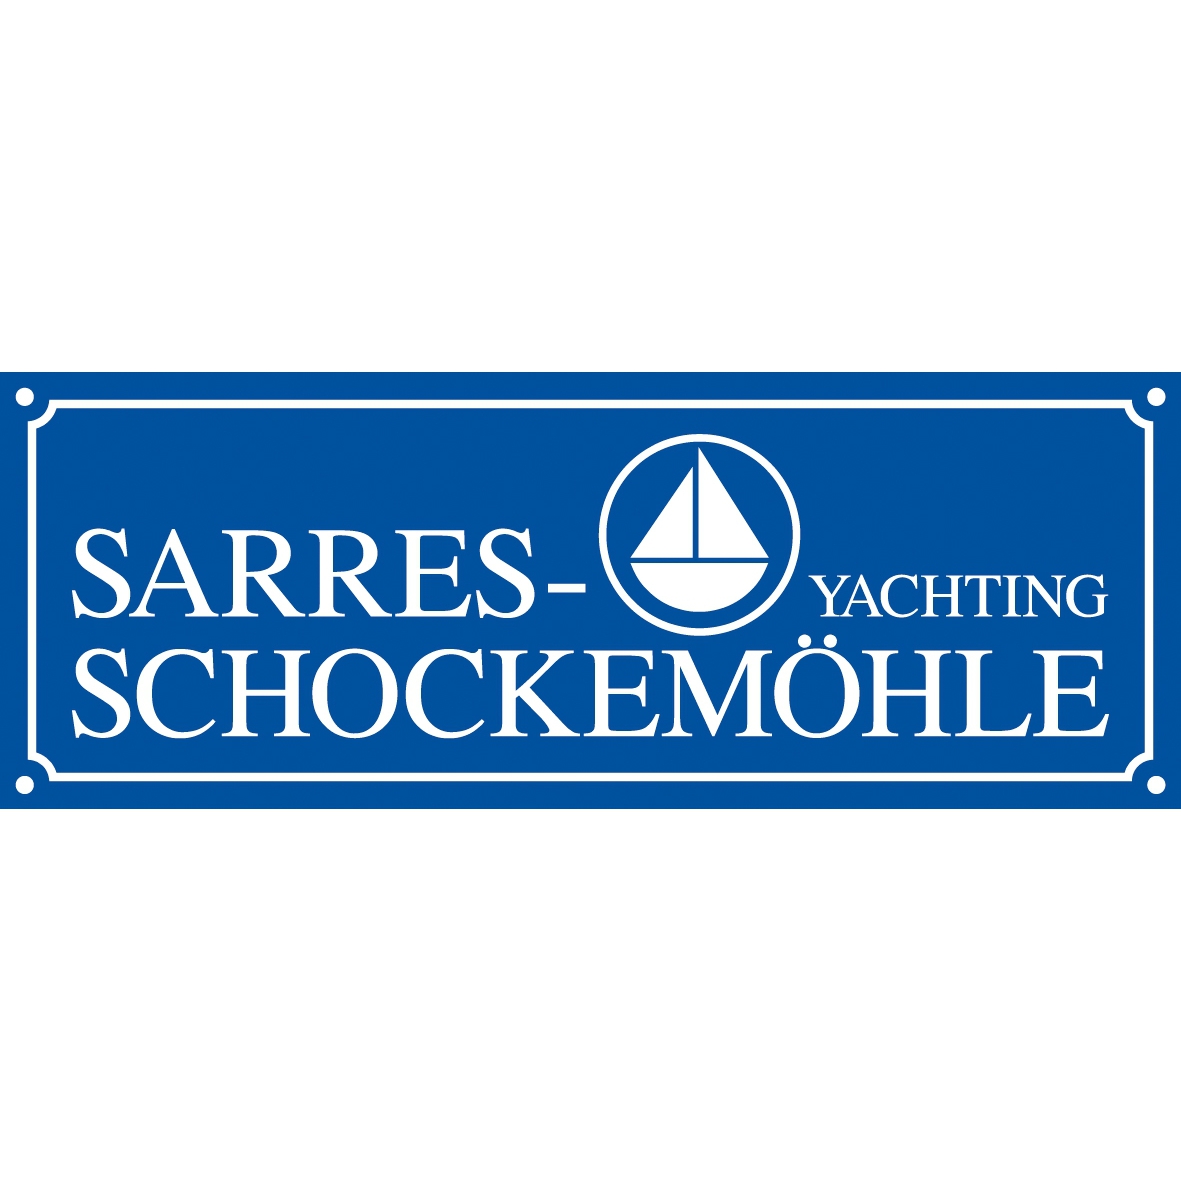 Sarres-Schockemöhle Yachting GmbH in Rheinberg - Logo